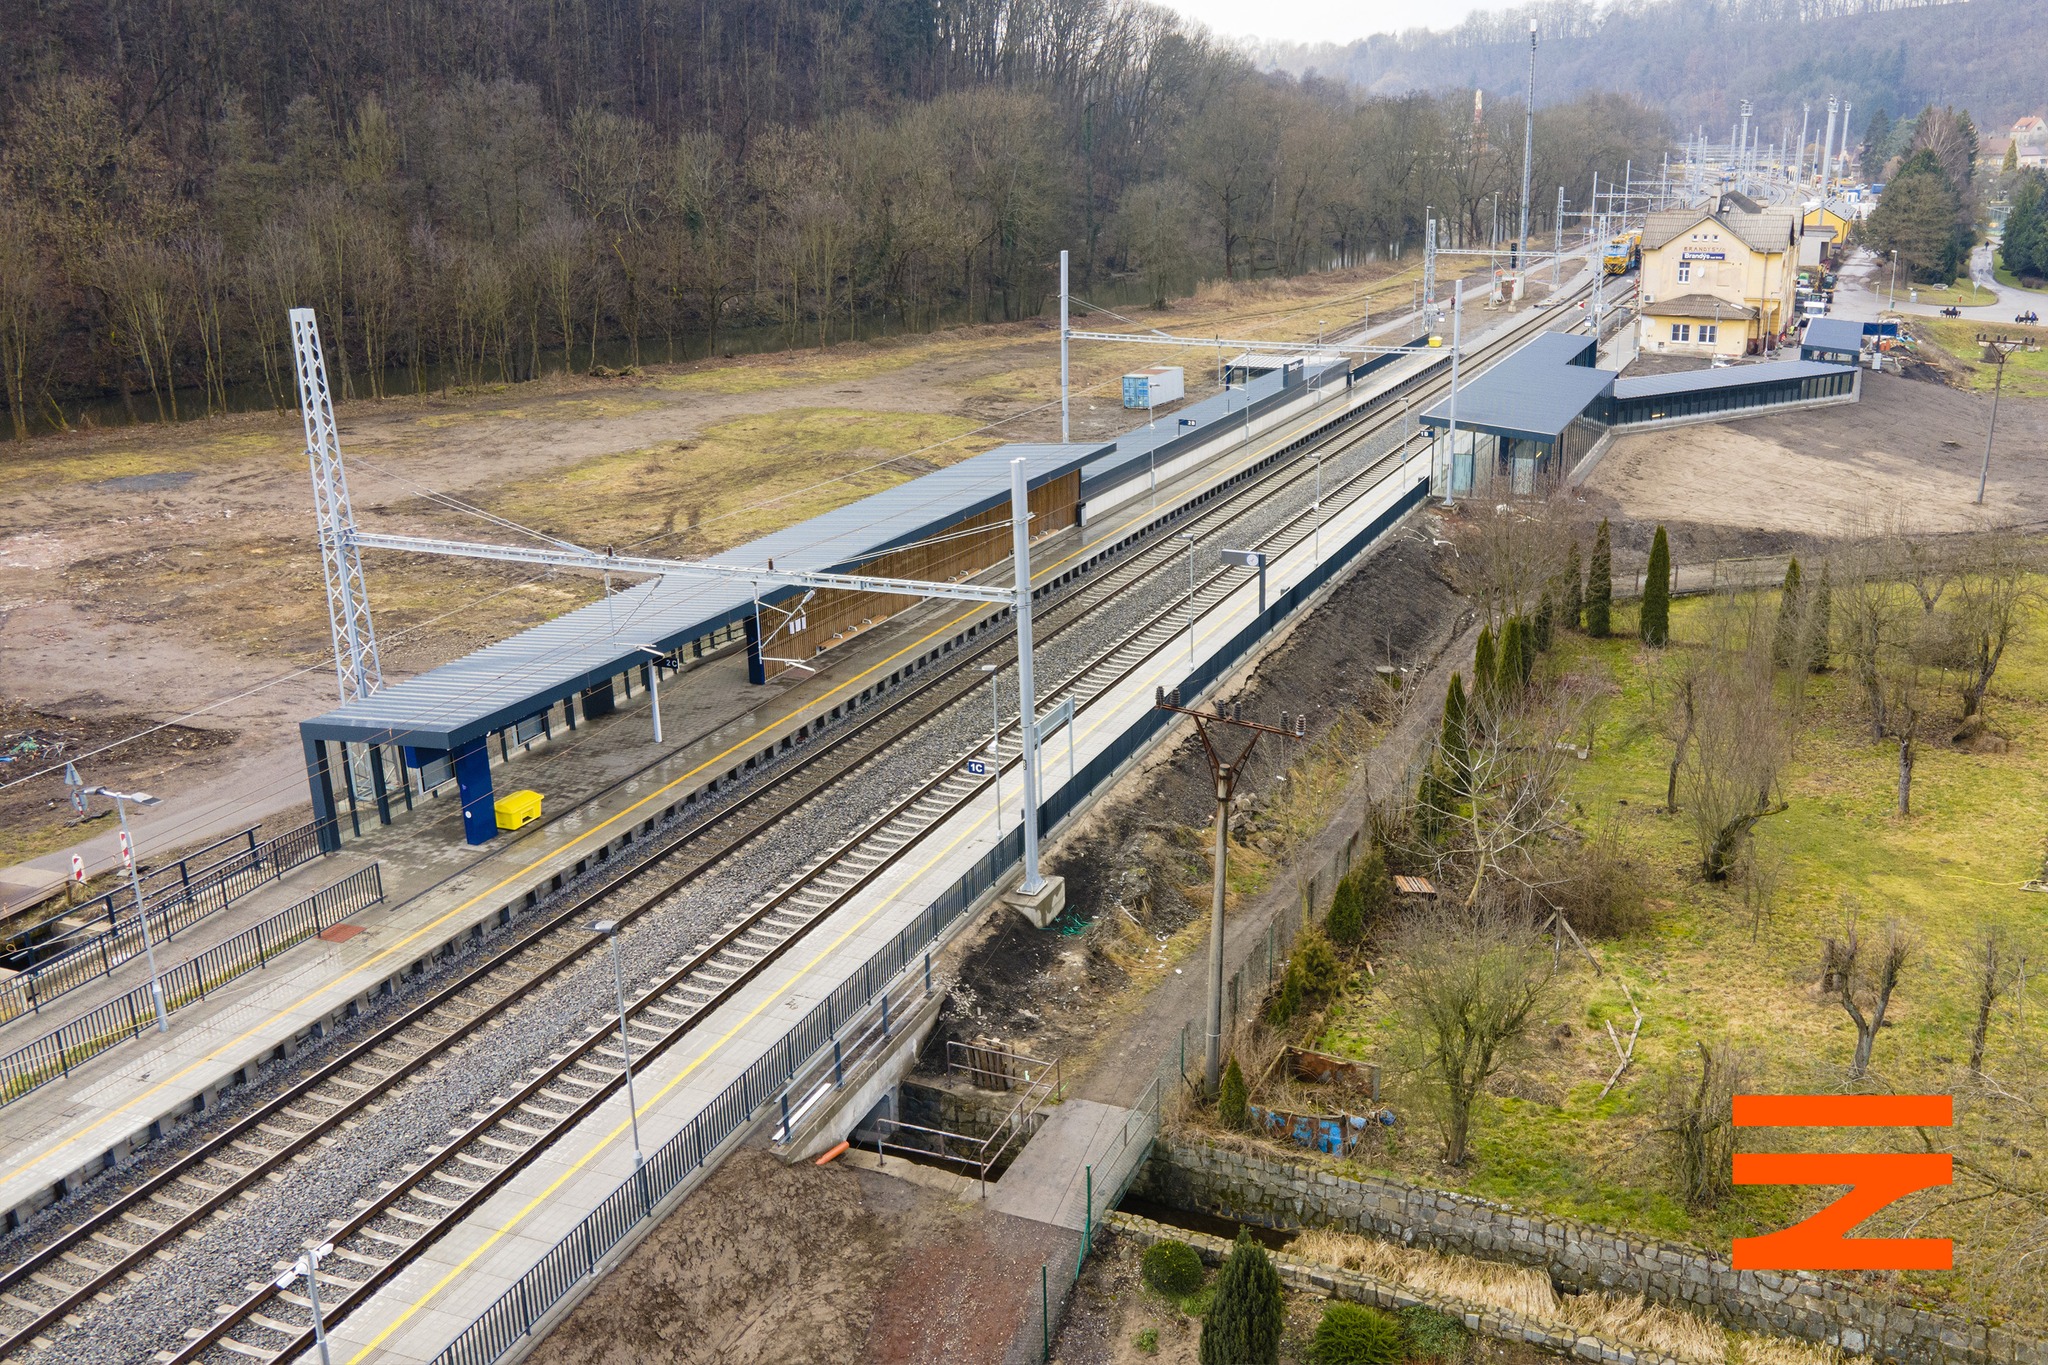 Brandýs nad Orlicí állomás látképe március elején (képek forrása: Správa železnic)